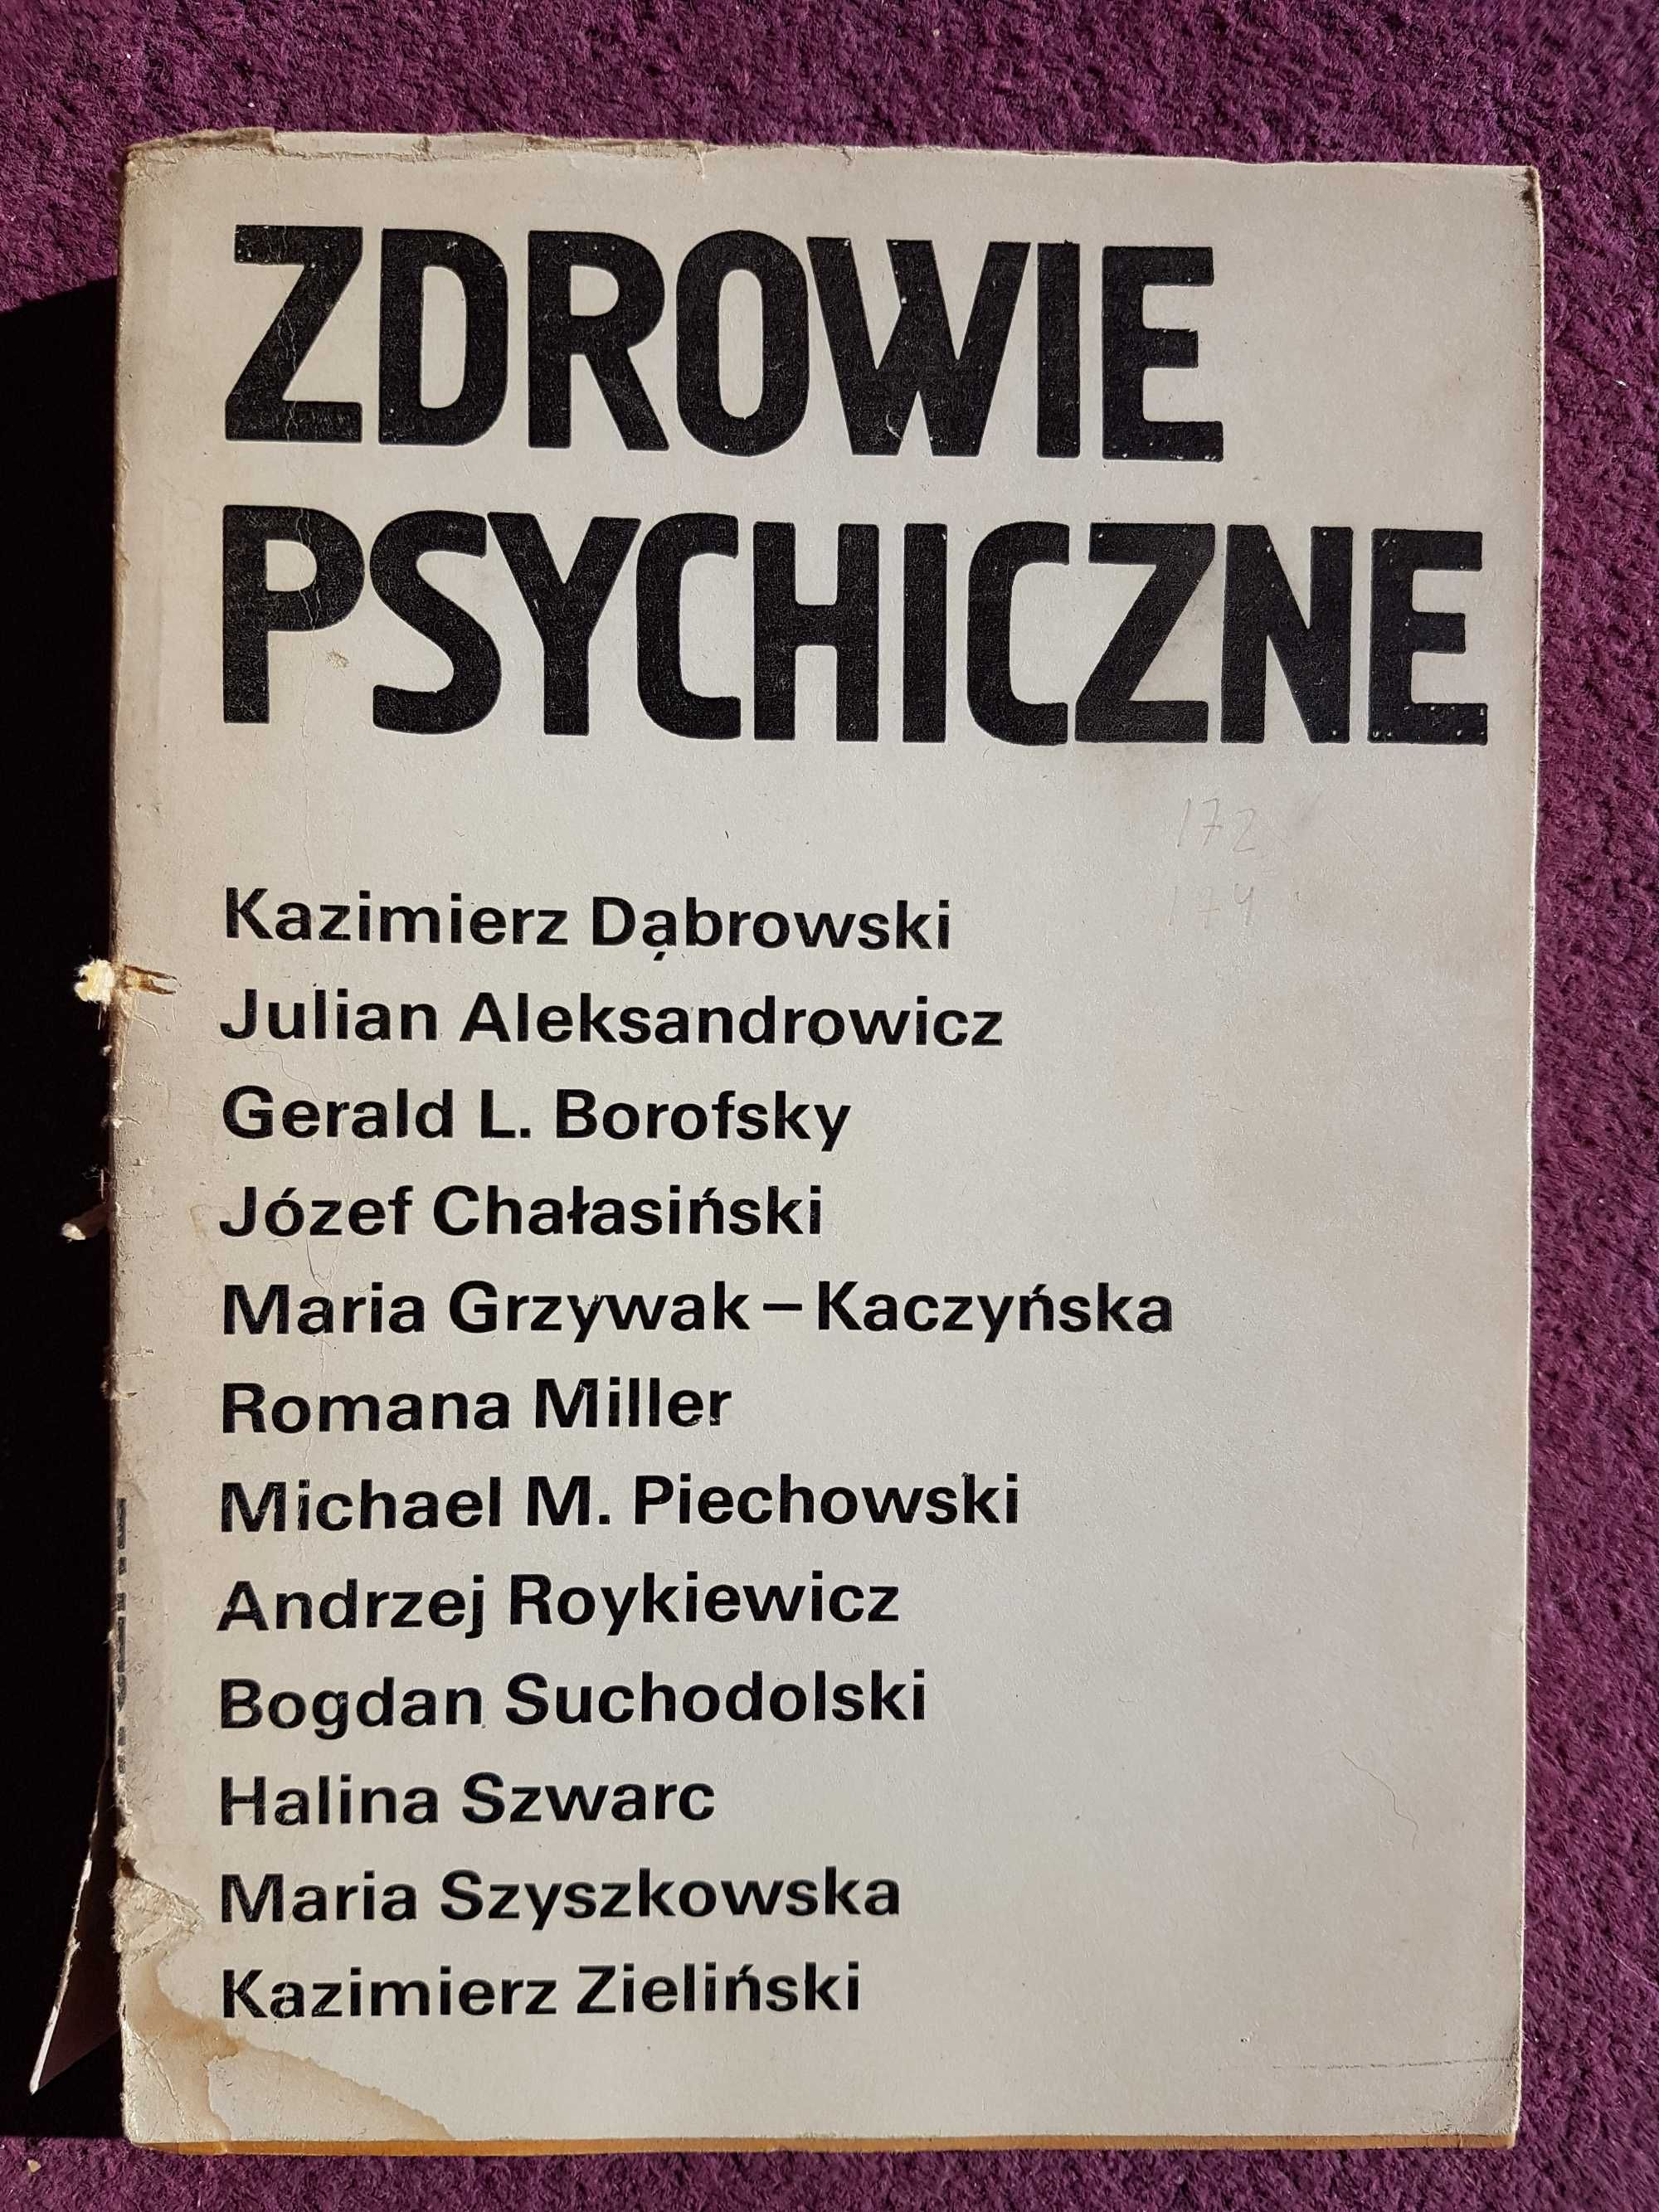 "Zdrowie psychiczne" (praca zbiorowa) red. K. Dąbrowski